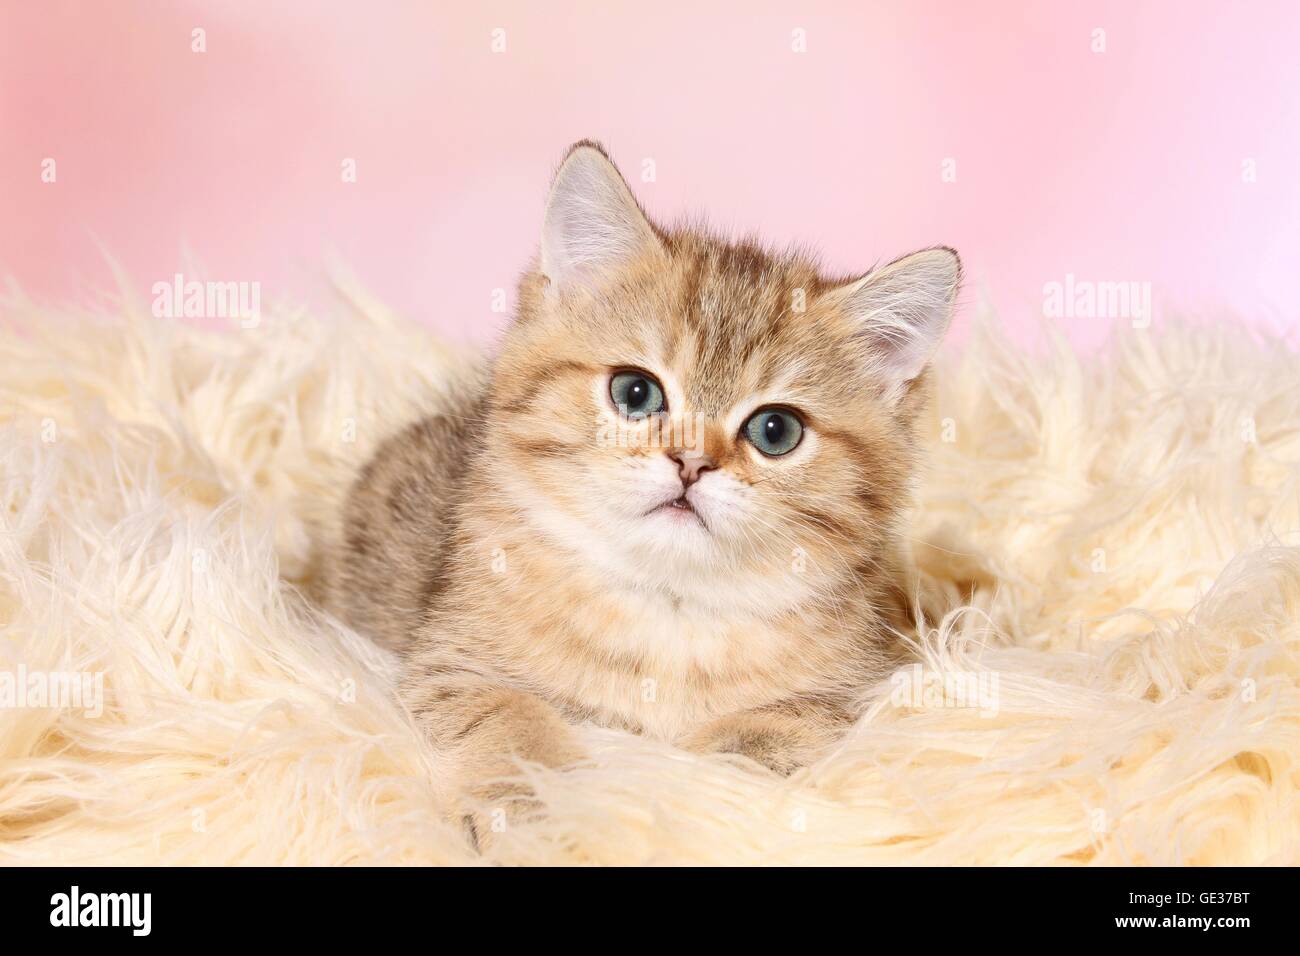 cute British Shorthair Kitten Stock Photo